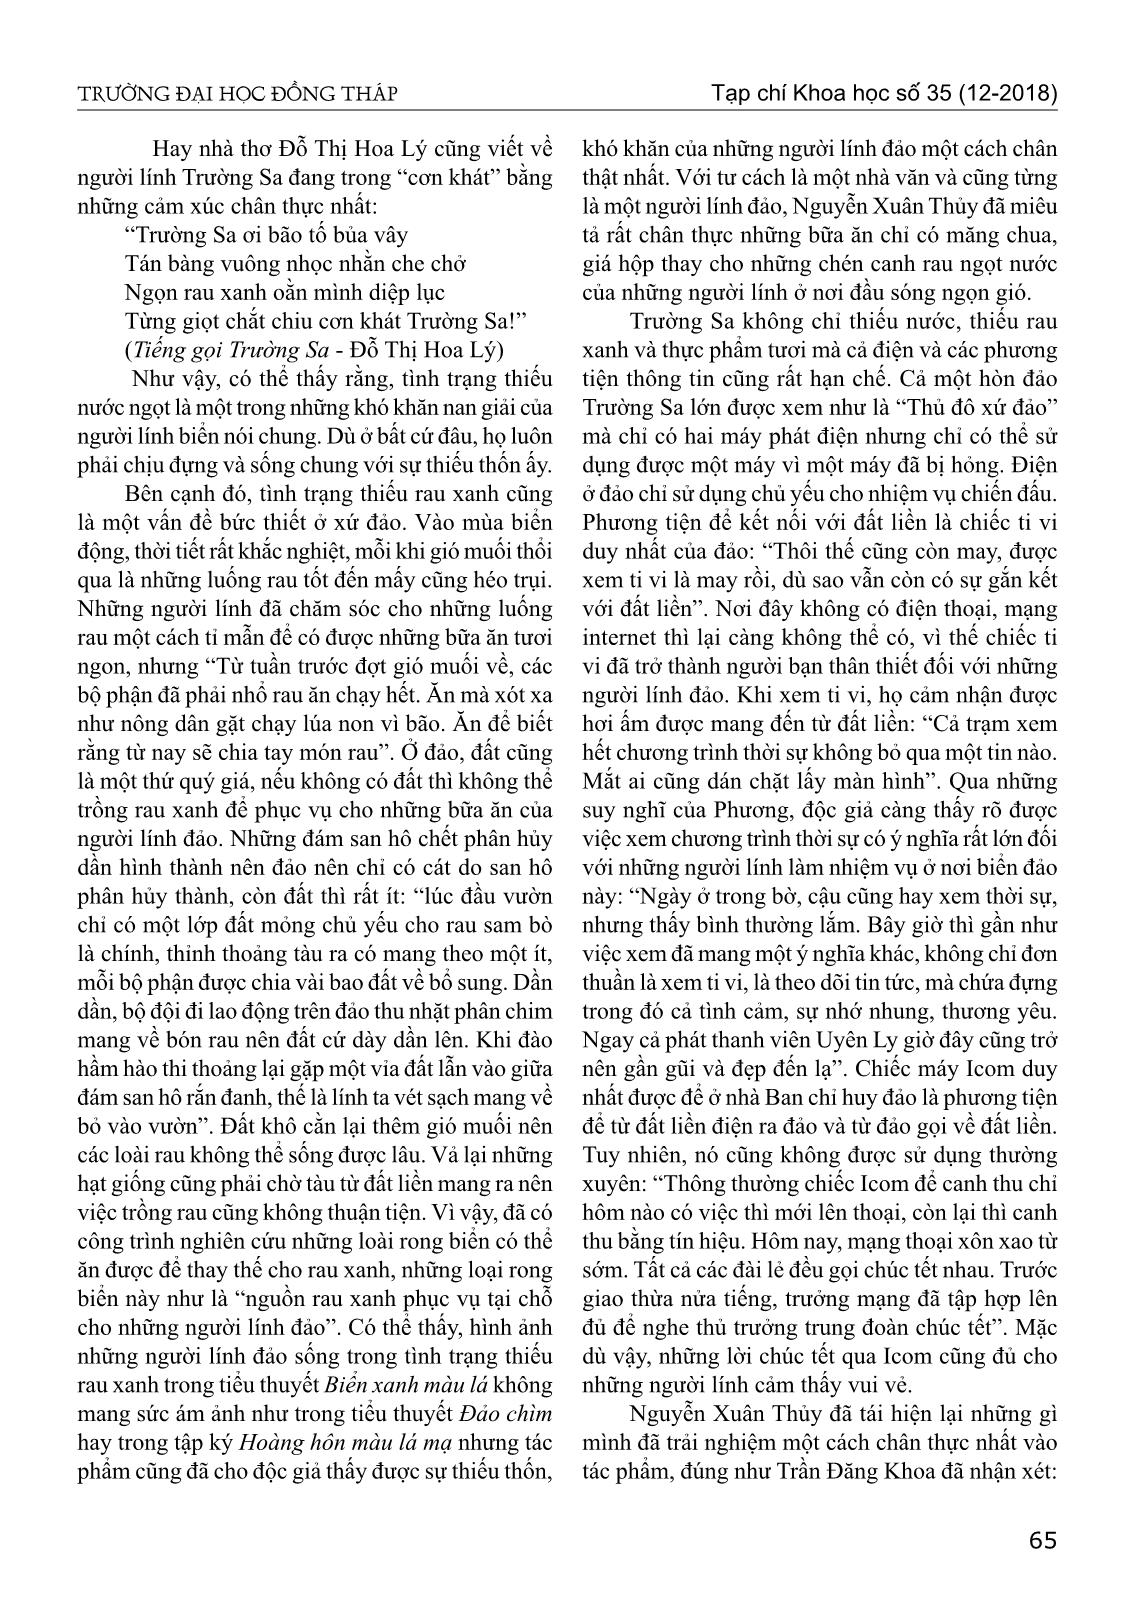 Chân dung người lính biển trong tiểu thuyết biển xanh màu lá của Nguyễn Xuân Thủy trang 2